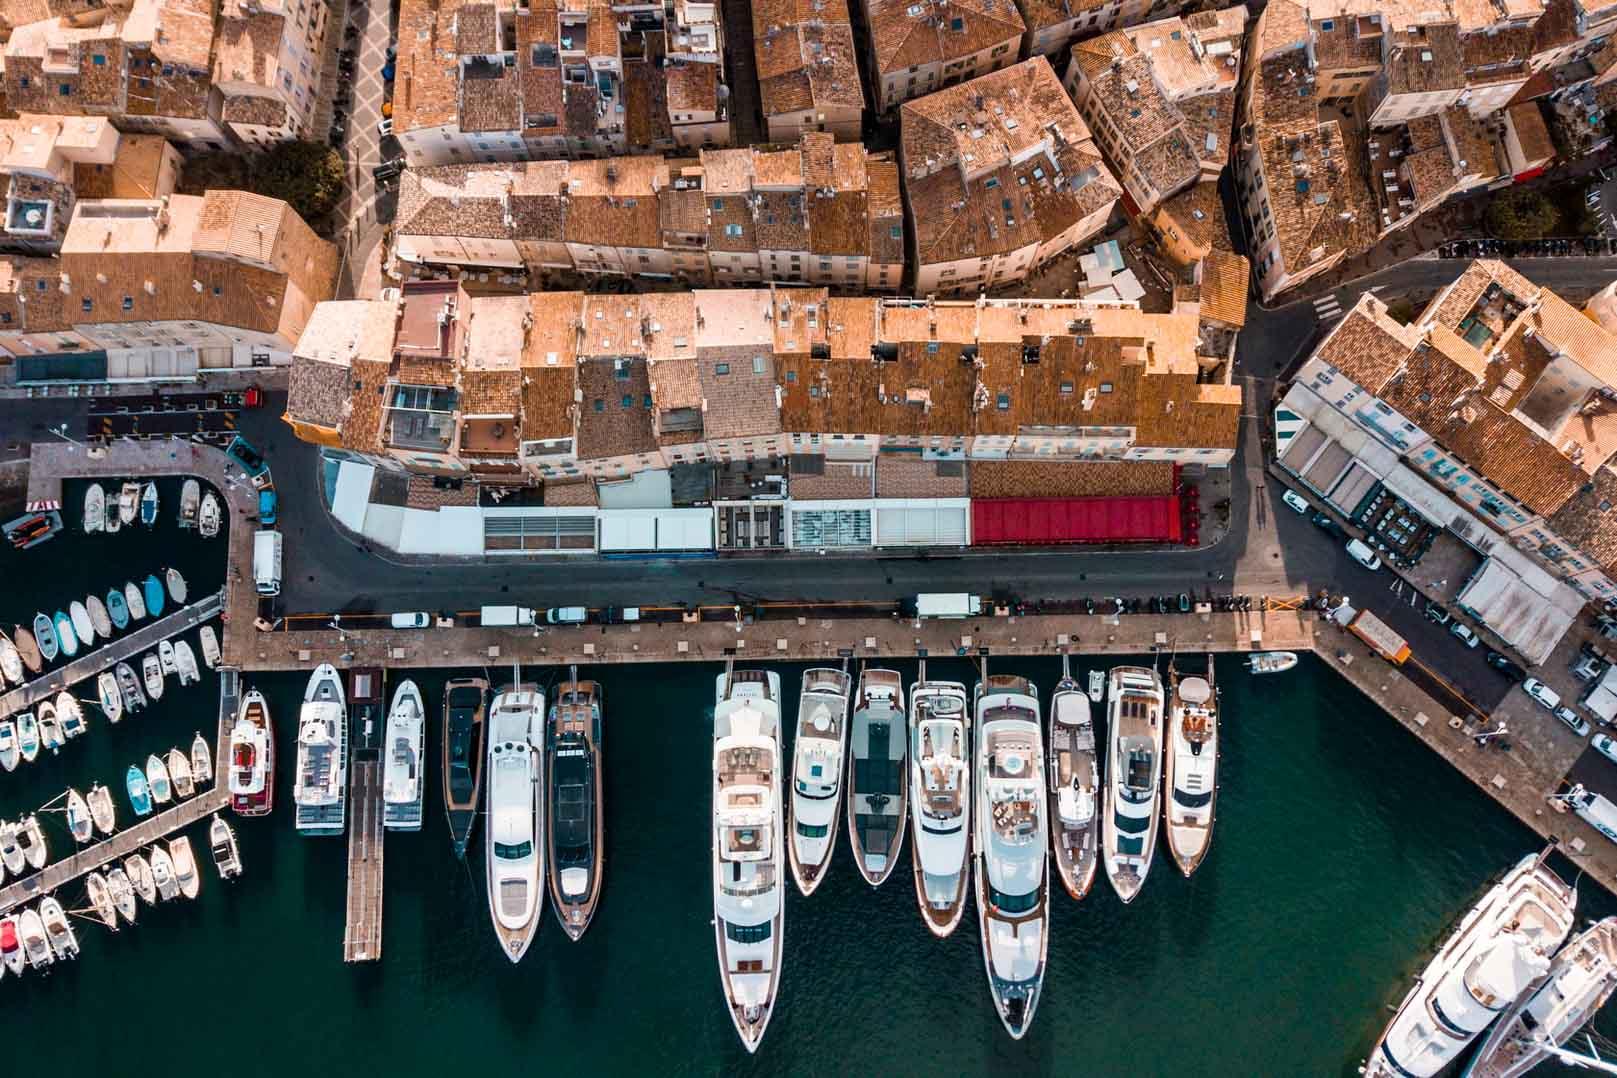 Les yachts s’alignent dans le port de Saint-Tropez © Valentin Kremer